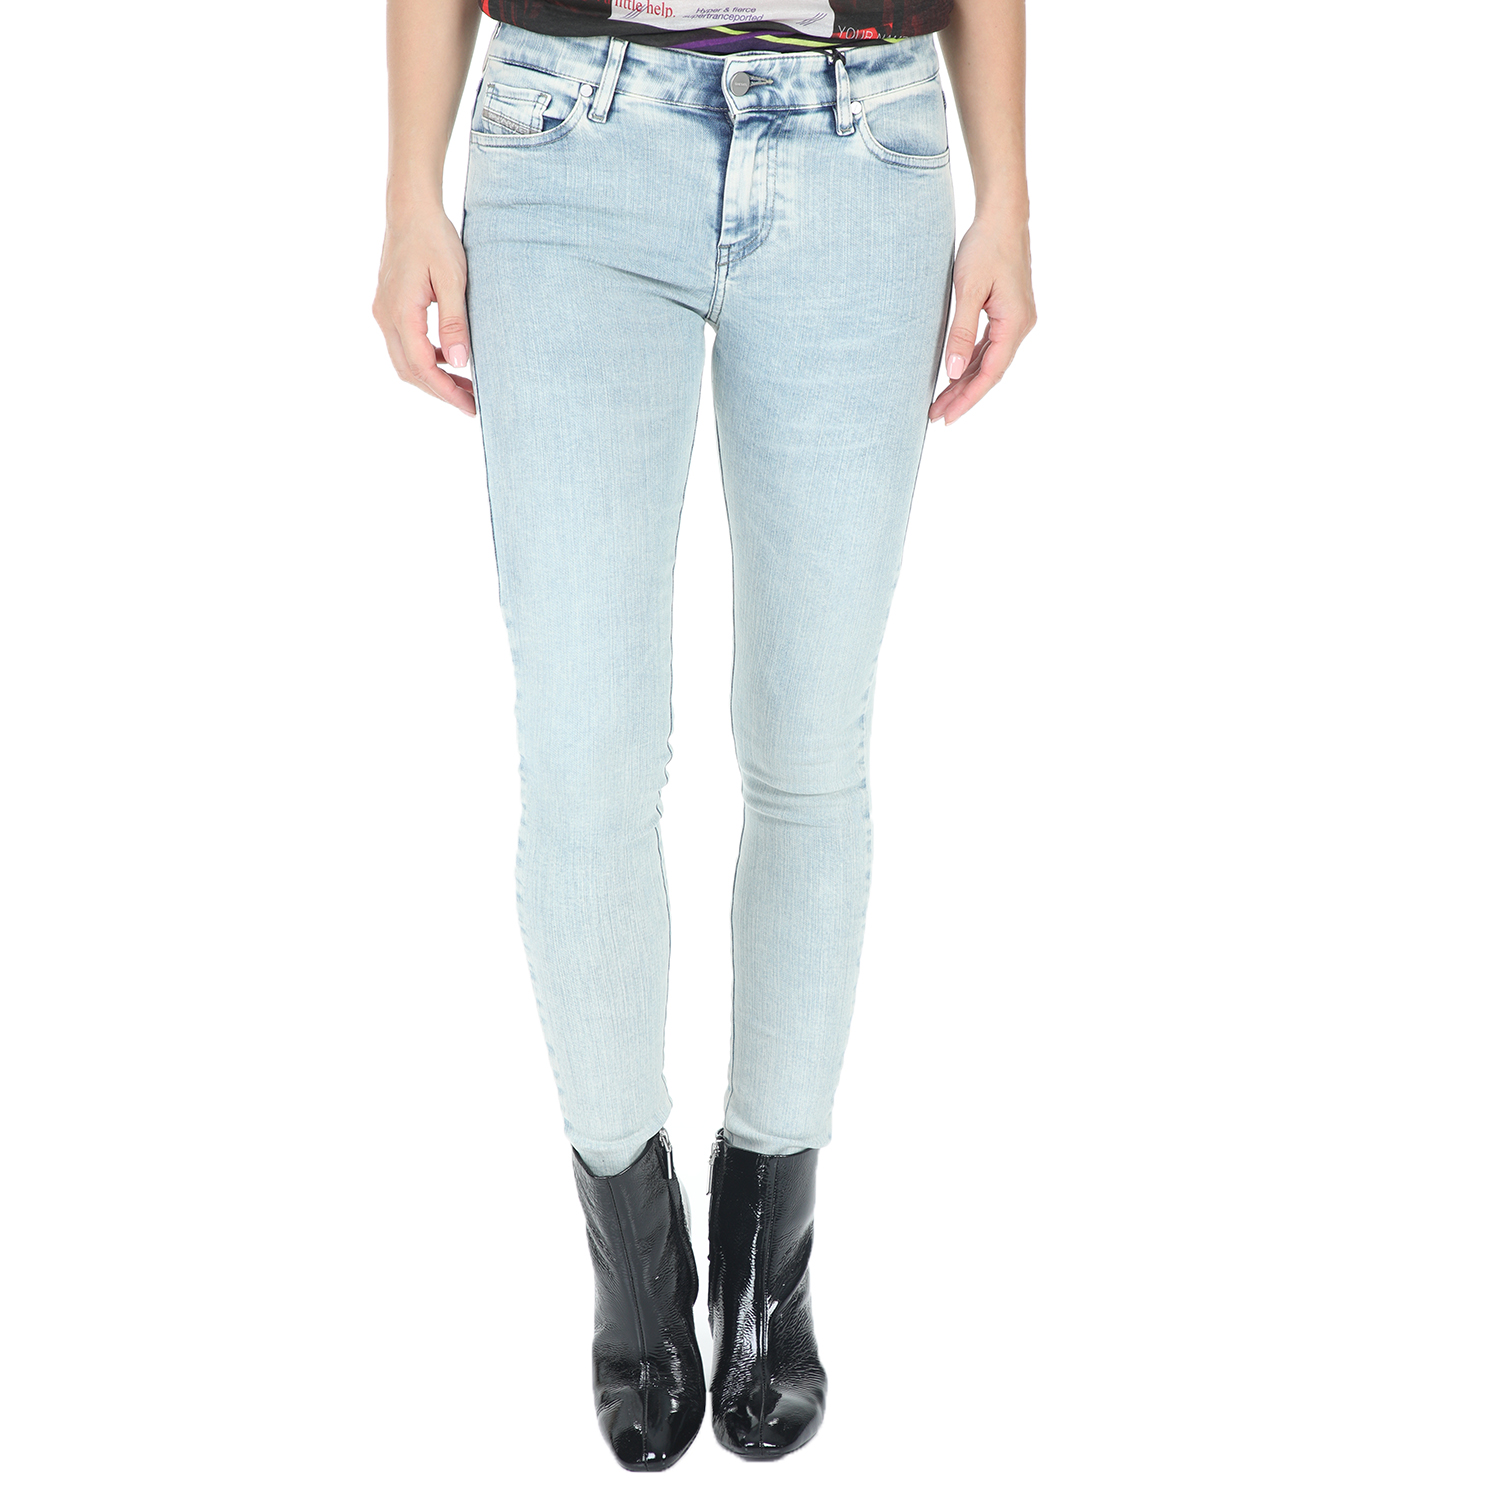 Γυναικεία/Ρούχα/Τζίν/Skinny DIESEL - Γυναικείο jean παντελόνι DIESEL SLANDY L.32 μπλε